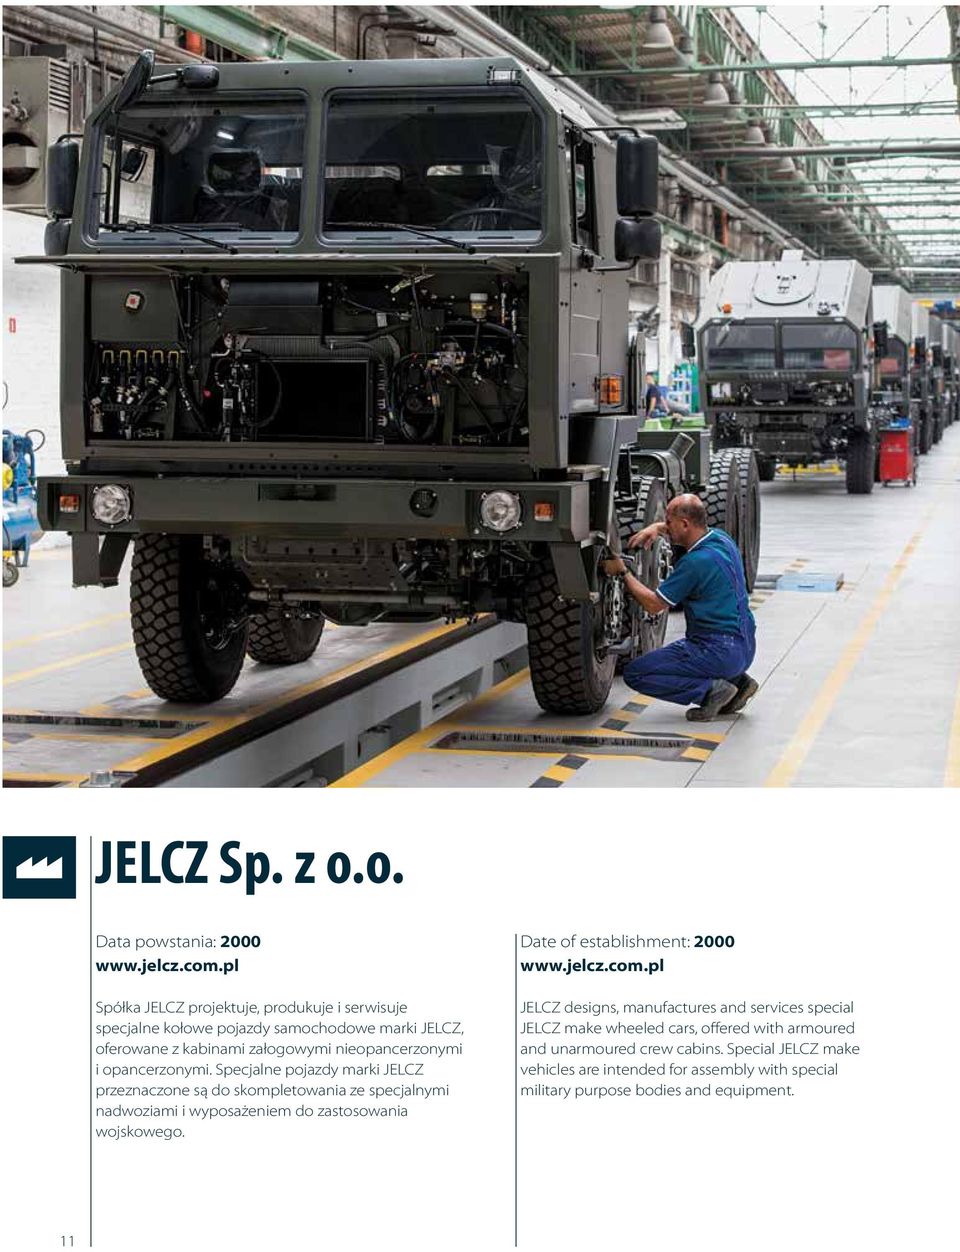 opancerzonymi. Specjalne pojazdy marki JELCZ przeznaczone są do skompletowania ze specjalnymi nadwoziami i wyposażeniem do zastosowania wojskowego.